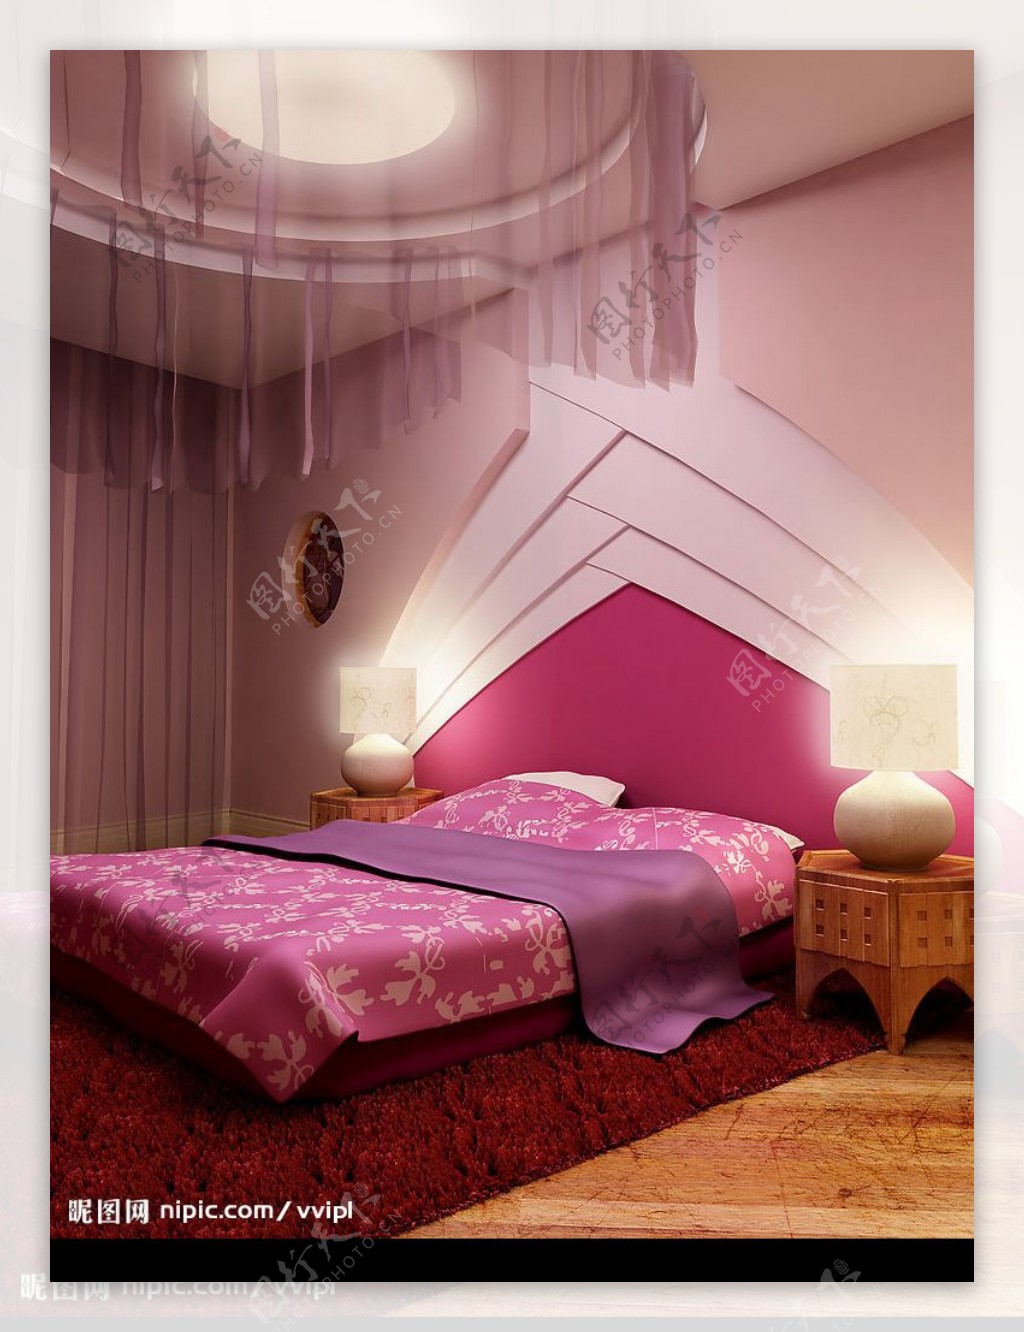 紫色调子的温馨房间图片素材